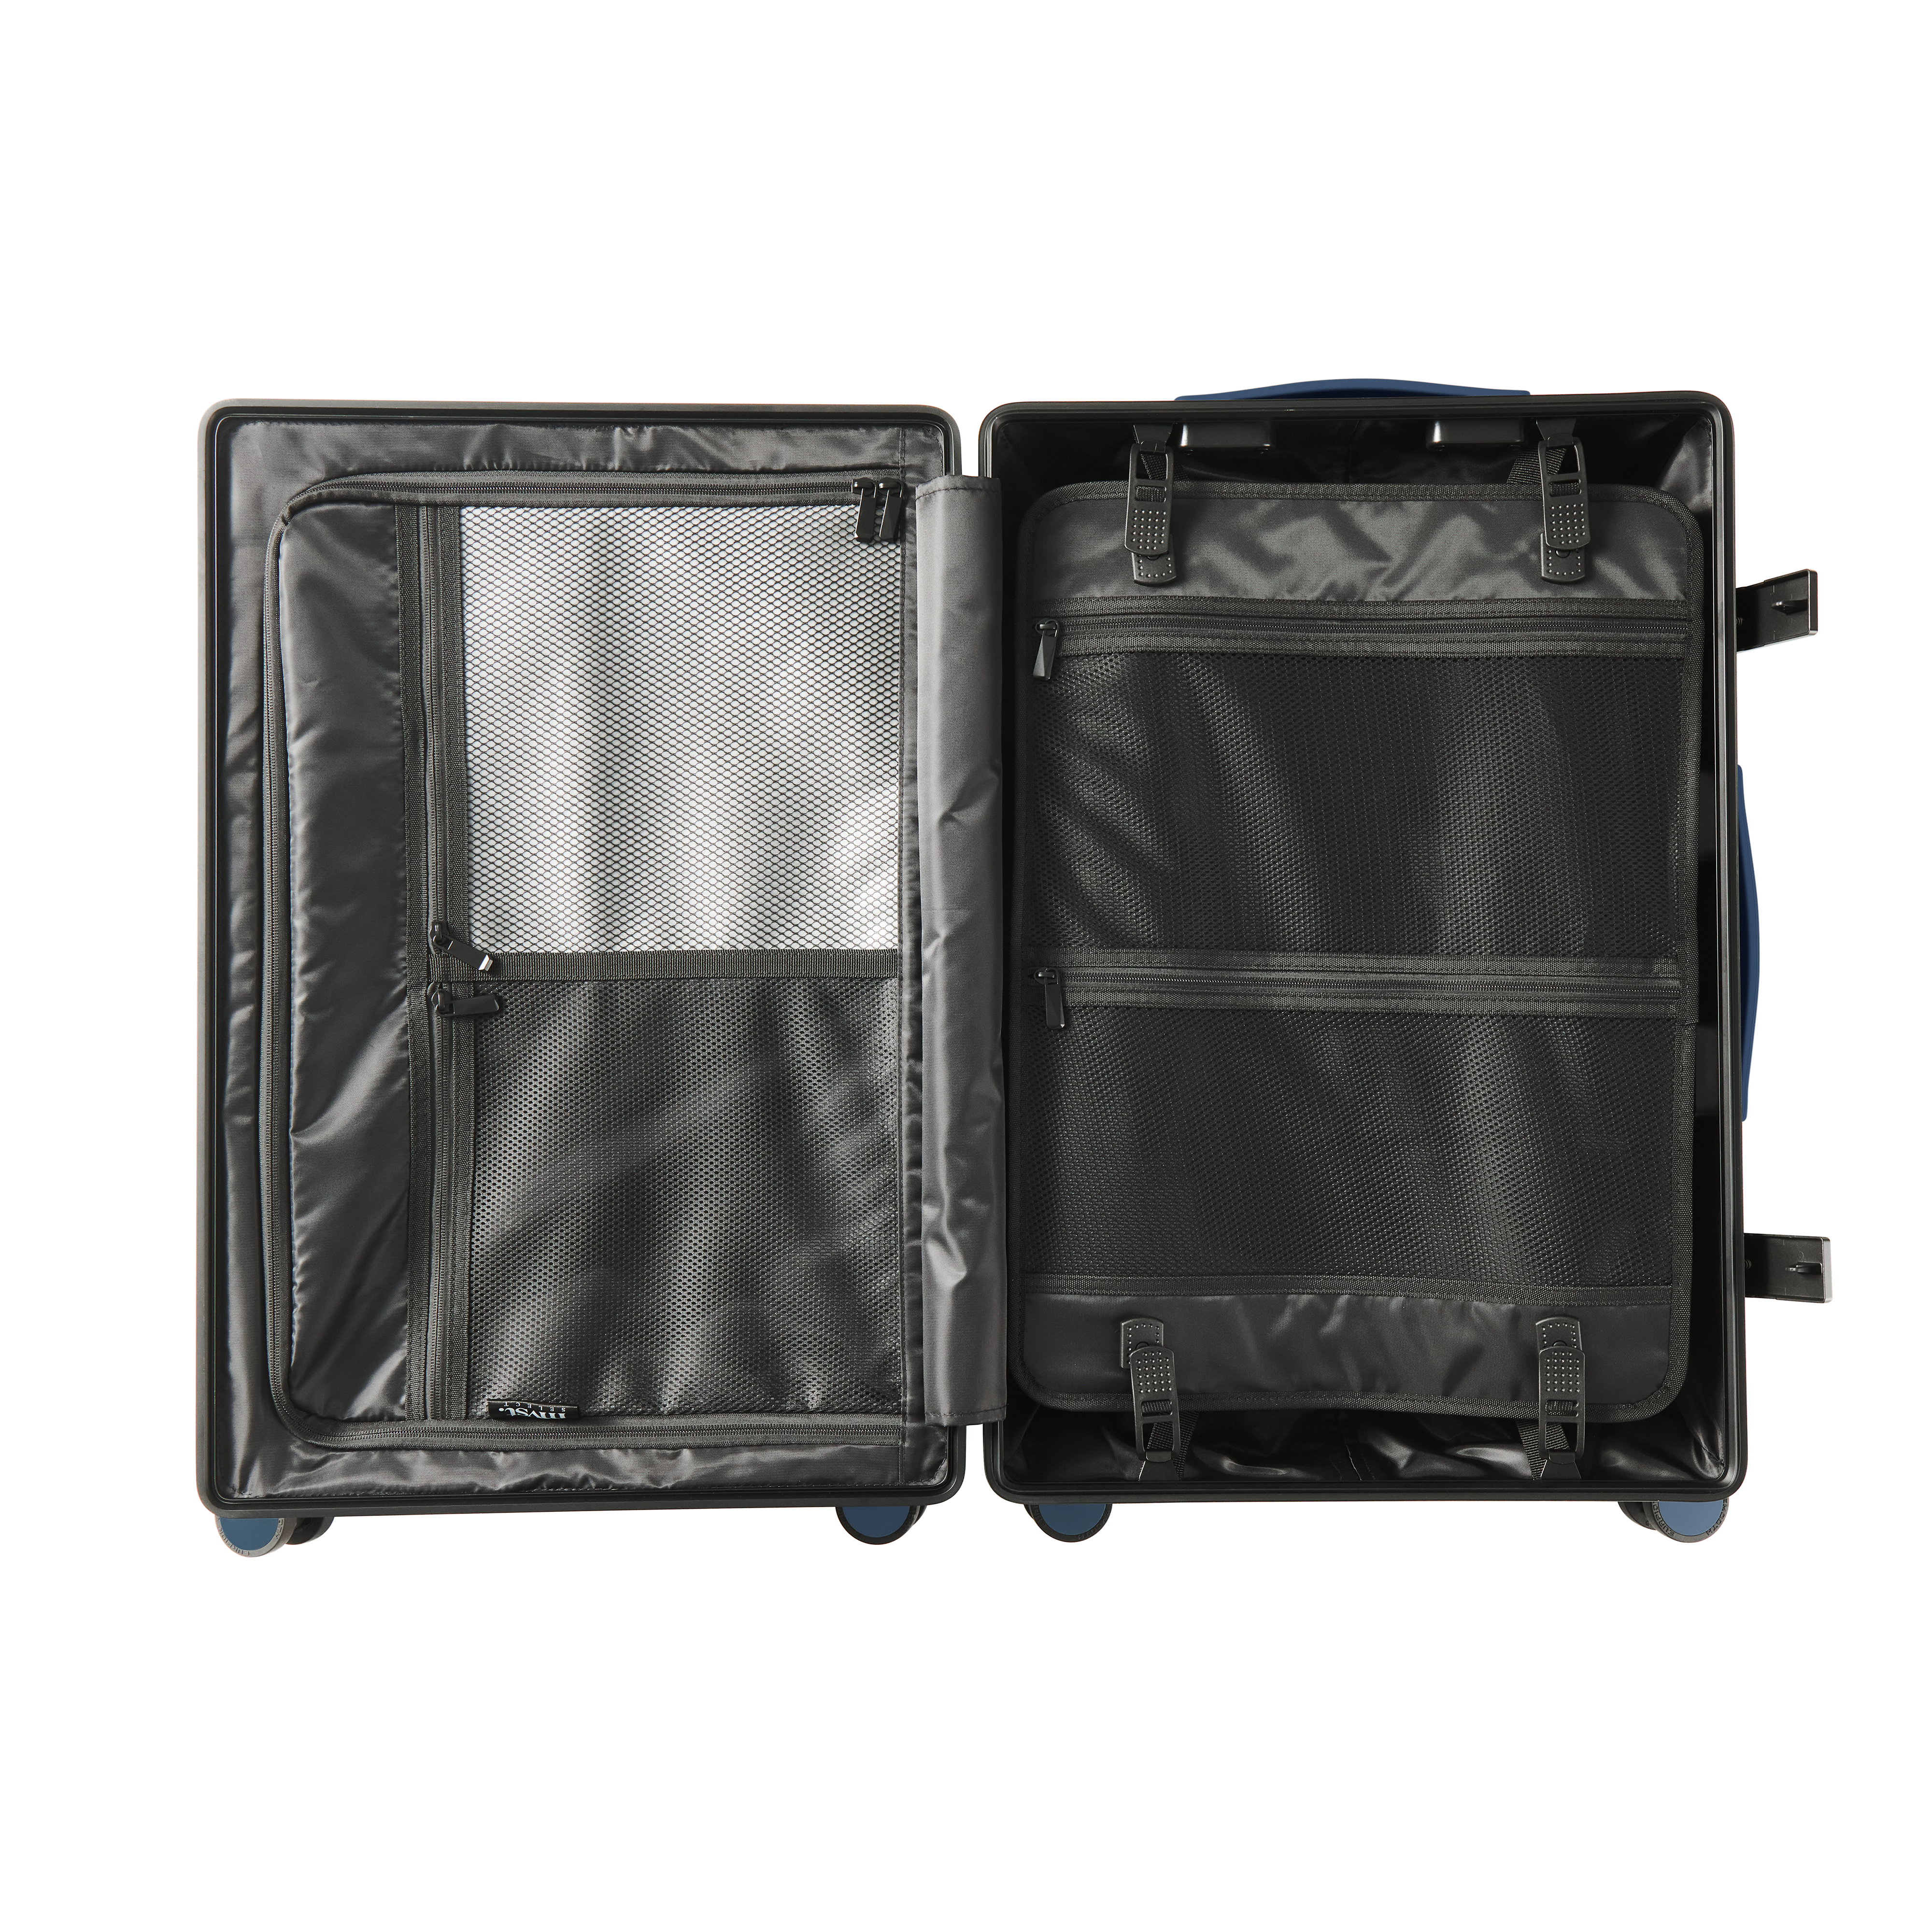 C45 Polycarbonate Suitcase Blue MVST